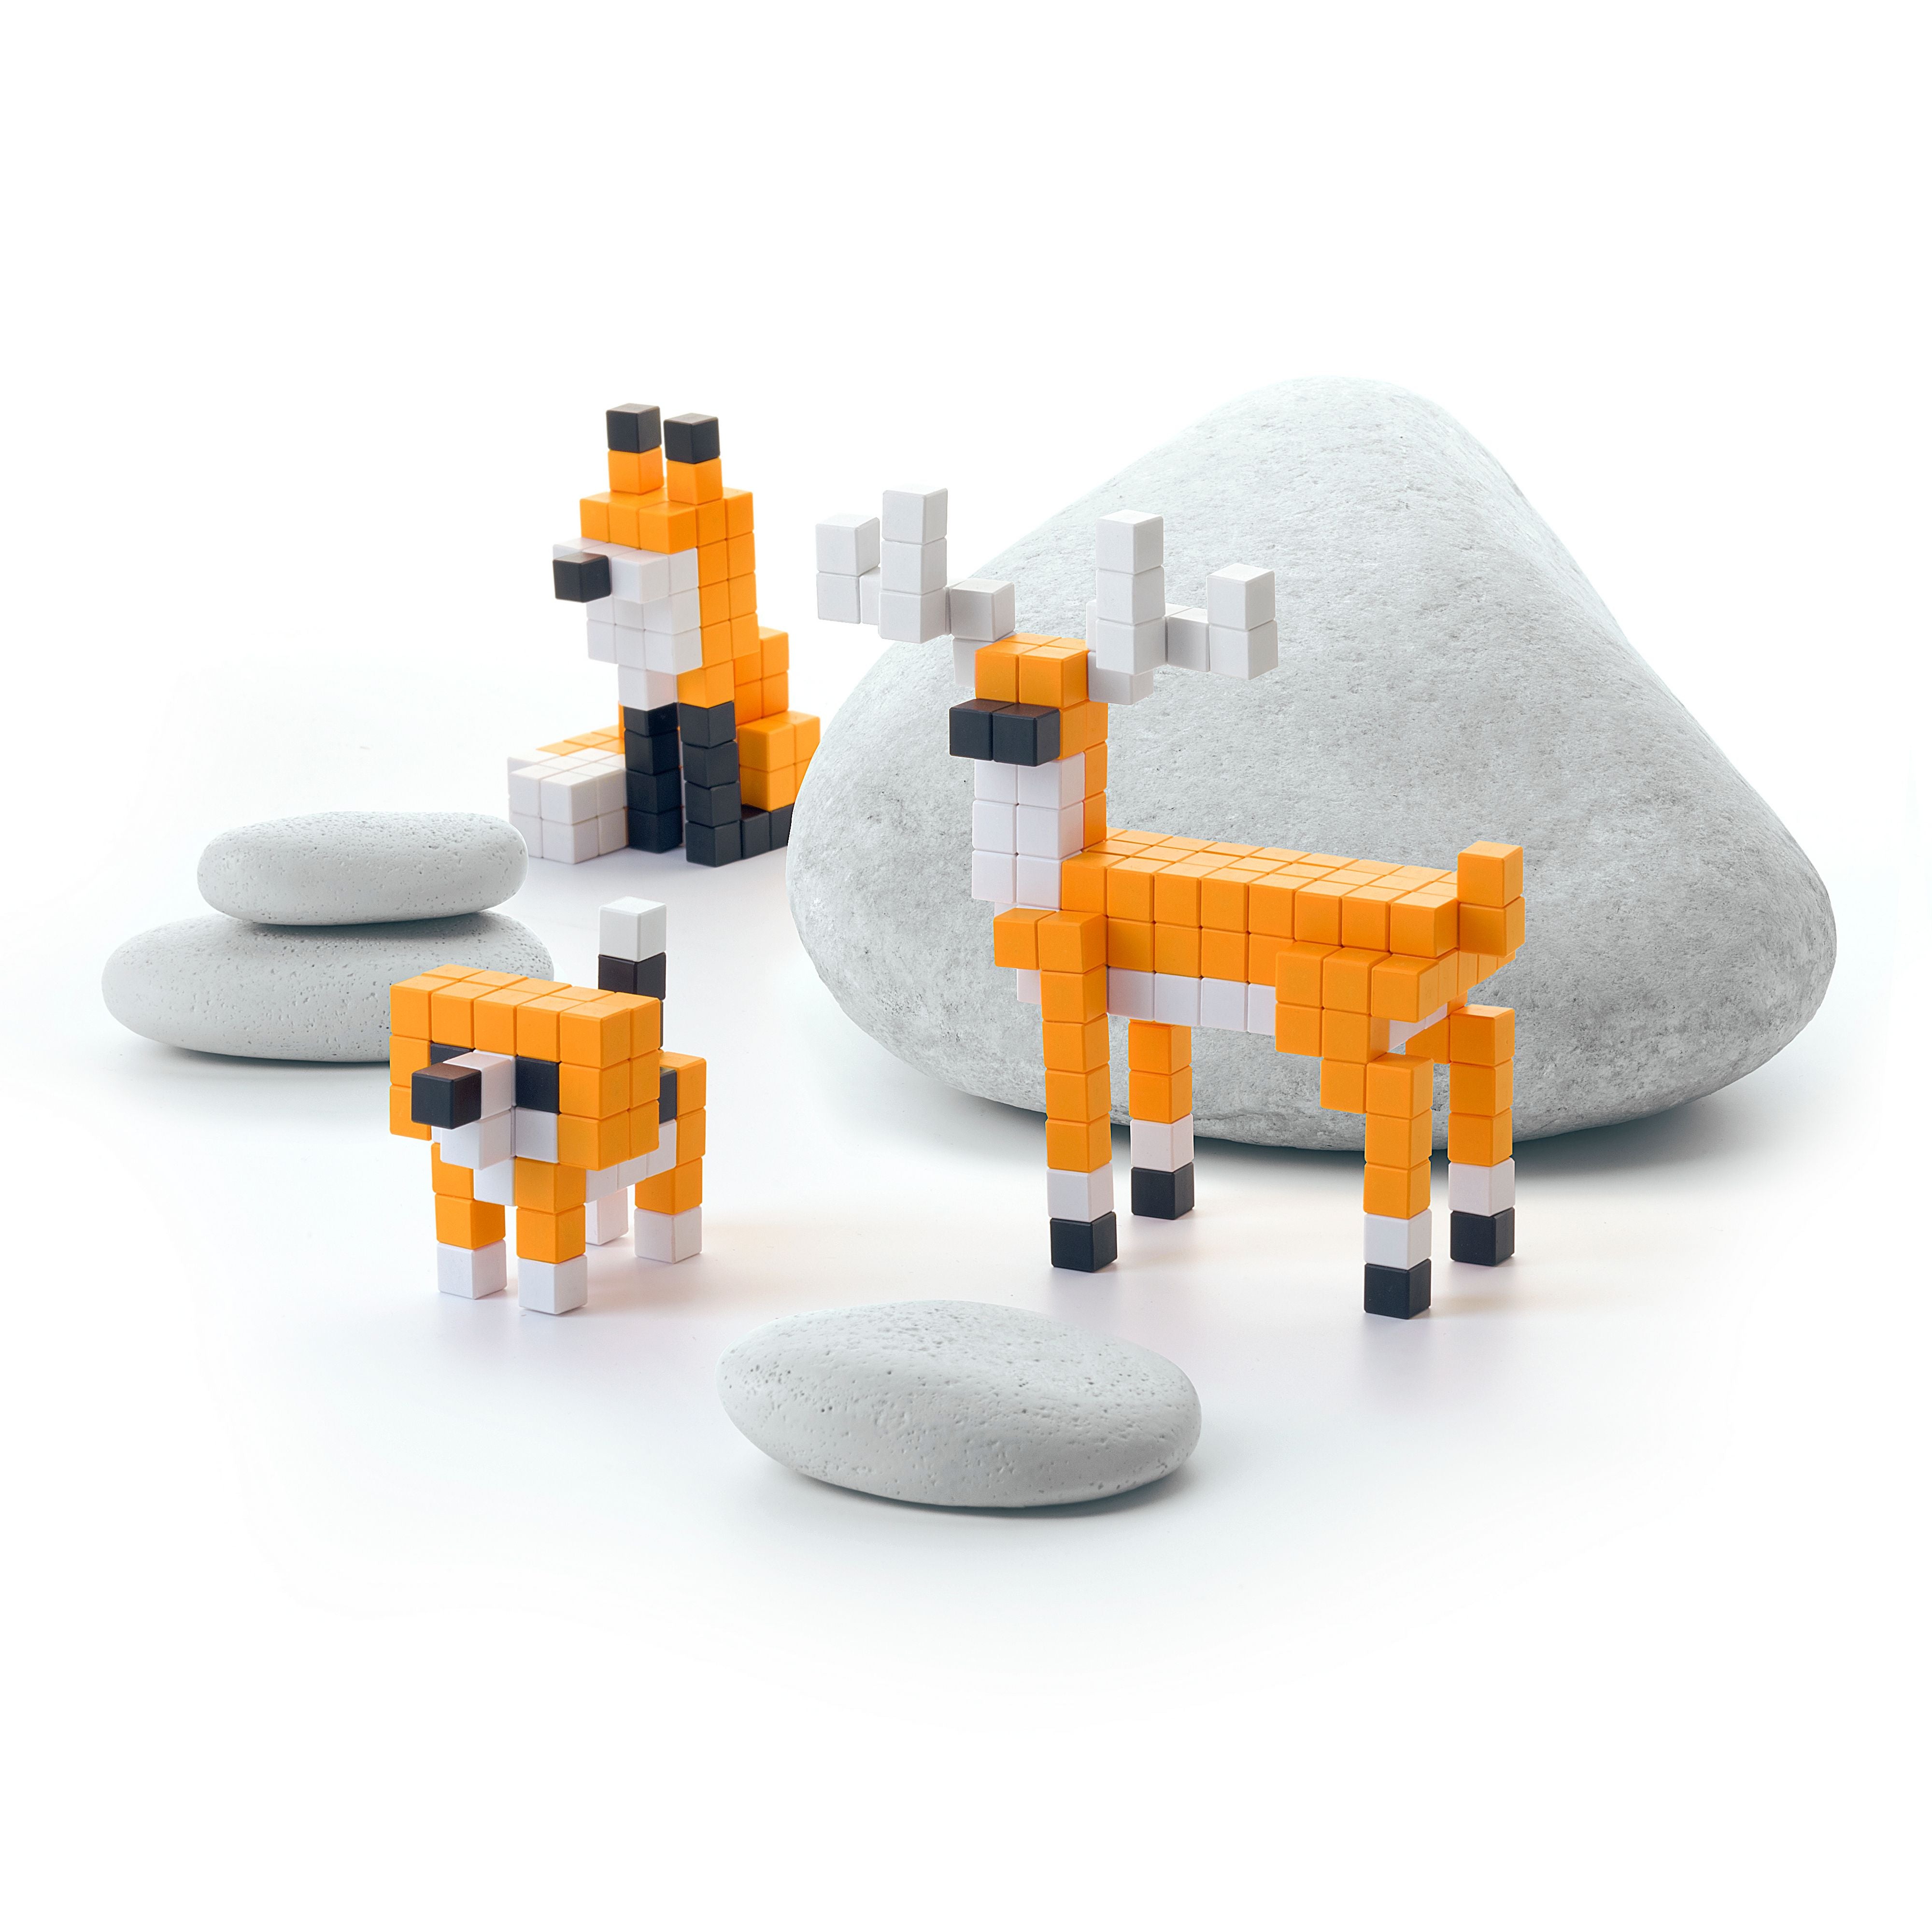 Pixio - orange animals - 162 blocks